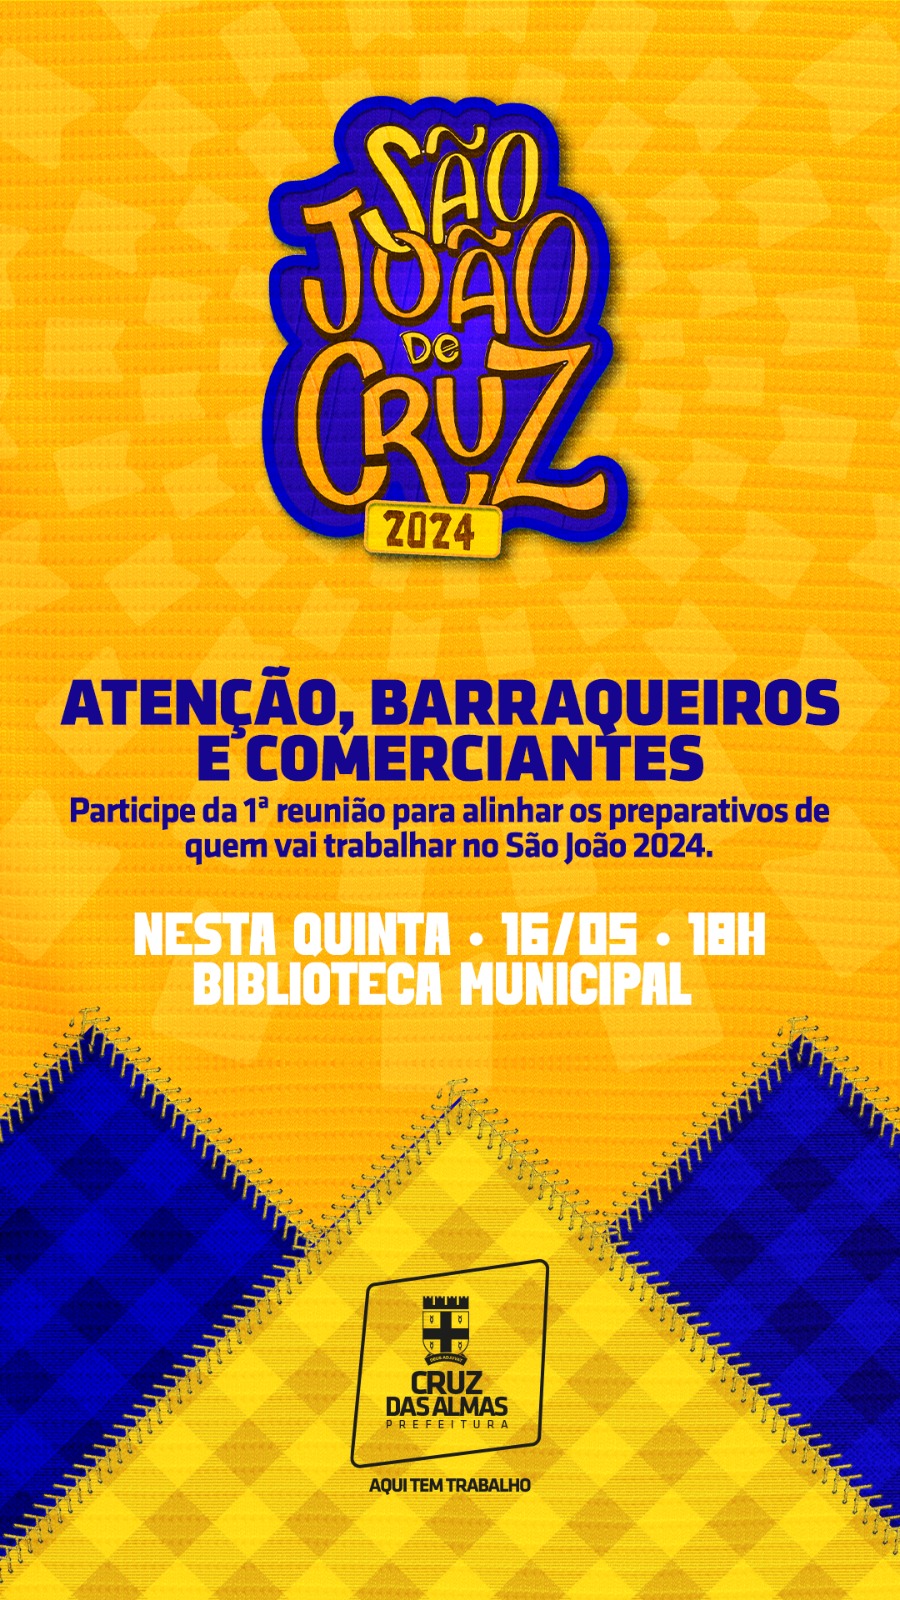 São João 2024: Prefeitura de Cruz promoverá nesta quinta-feira (16) reunião de alinhamento com barraqueiros e comerciantes